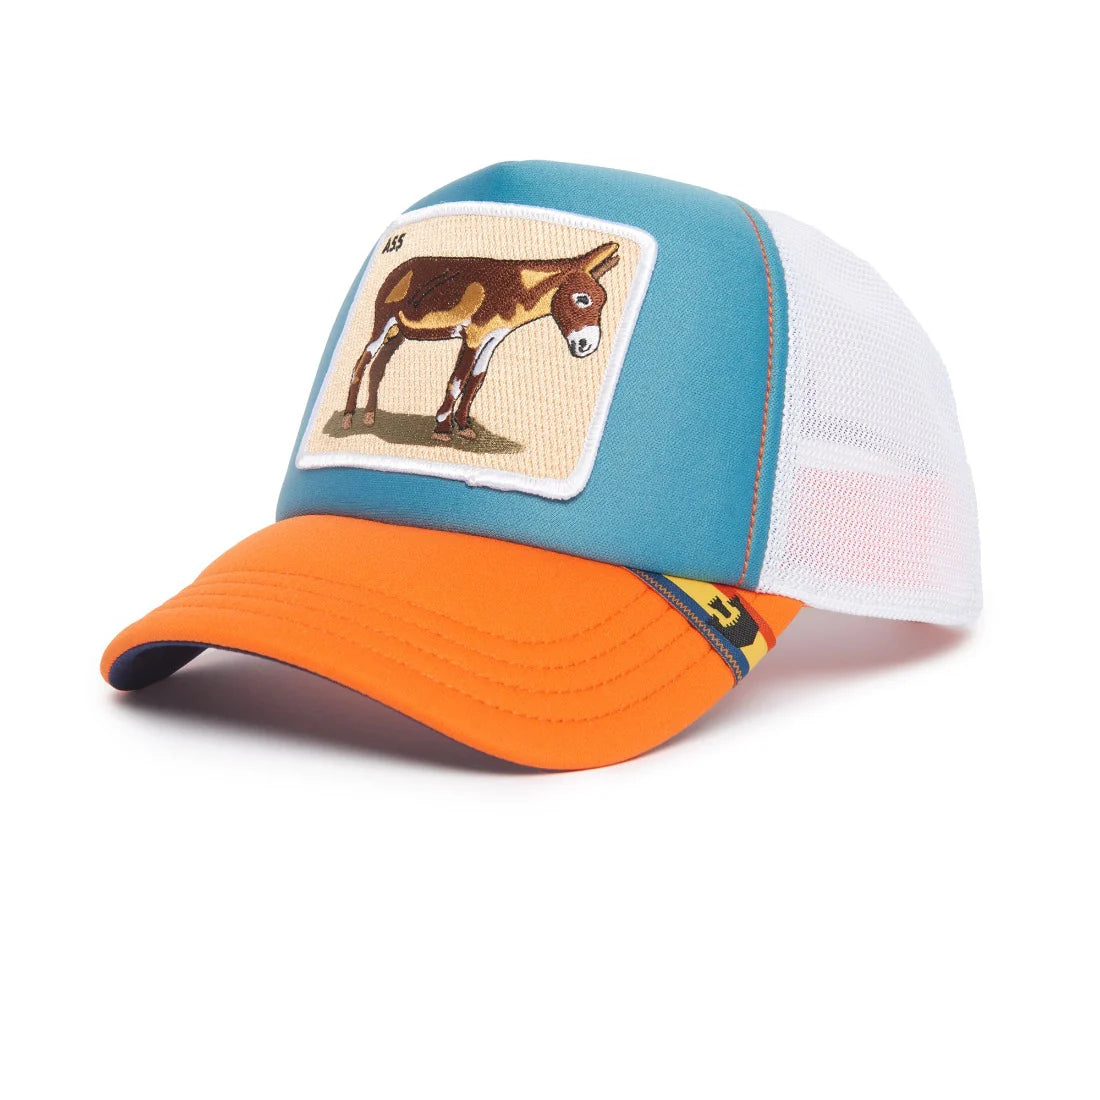 'Goorin Bros. First Ass Trucker Hat' in 'Teal' colour